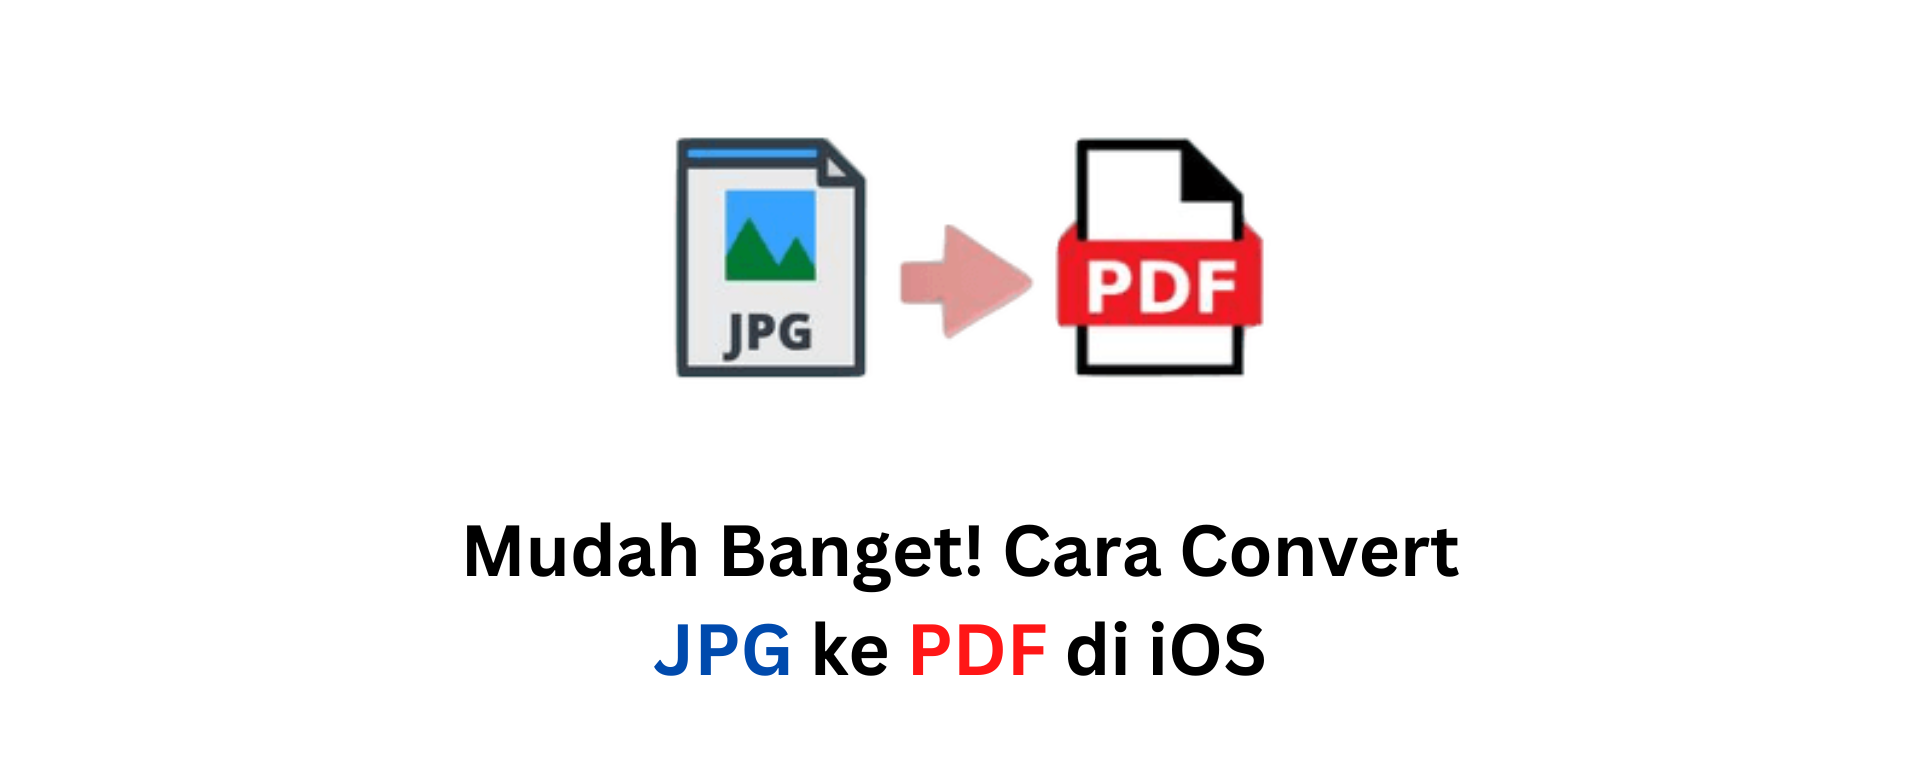 Mudah Banget! Cara Convert JPG ke PDF di iOS